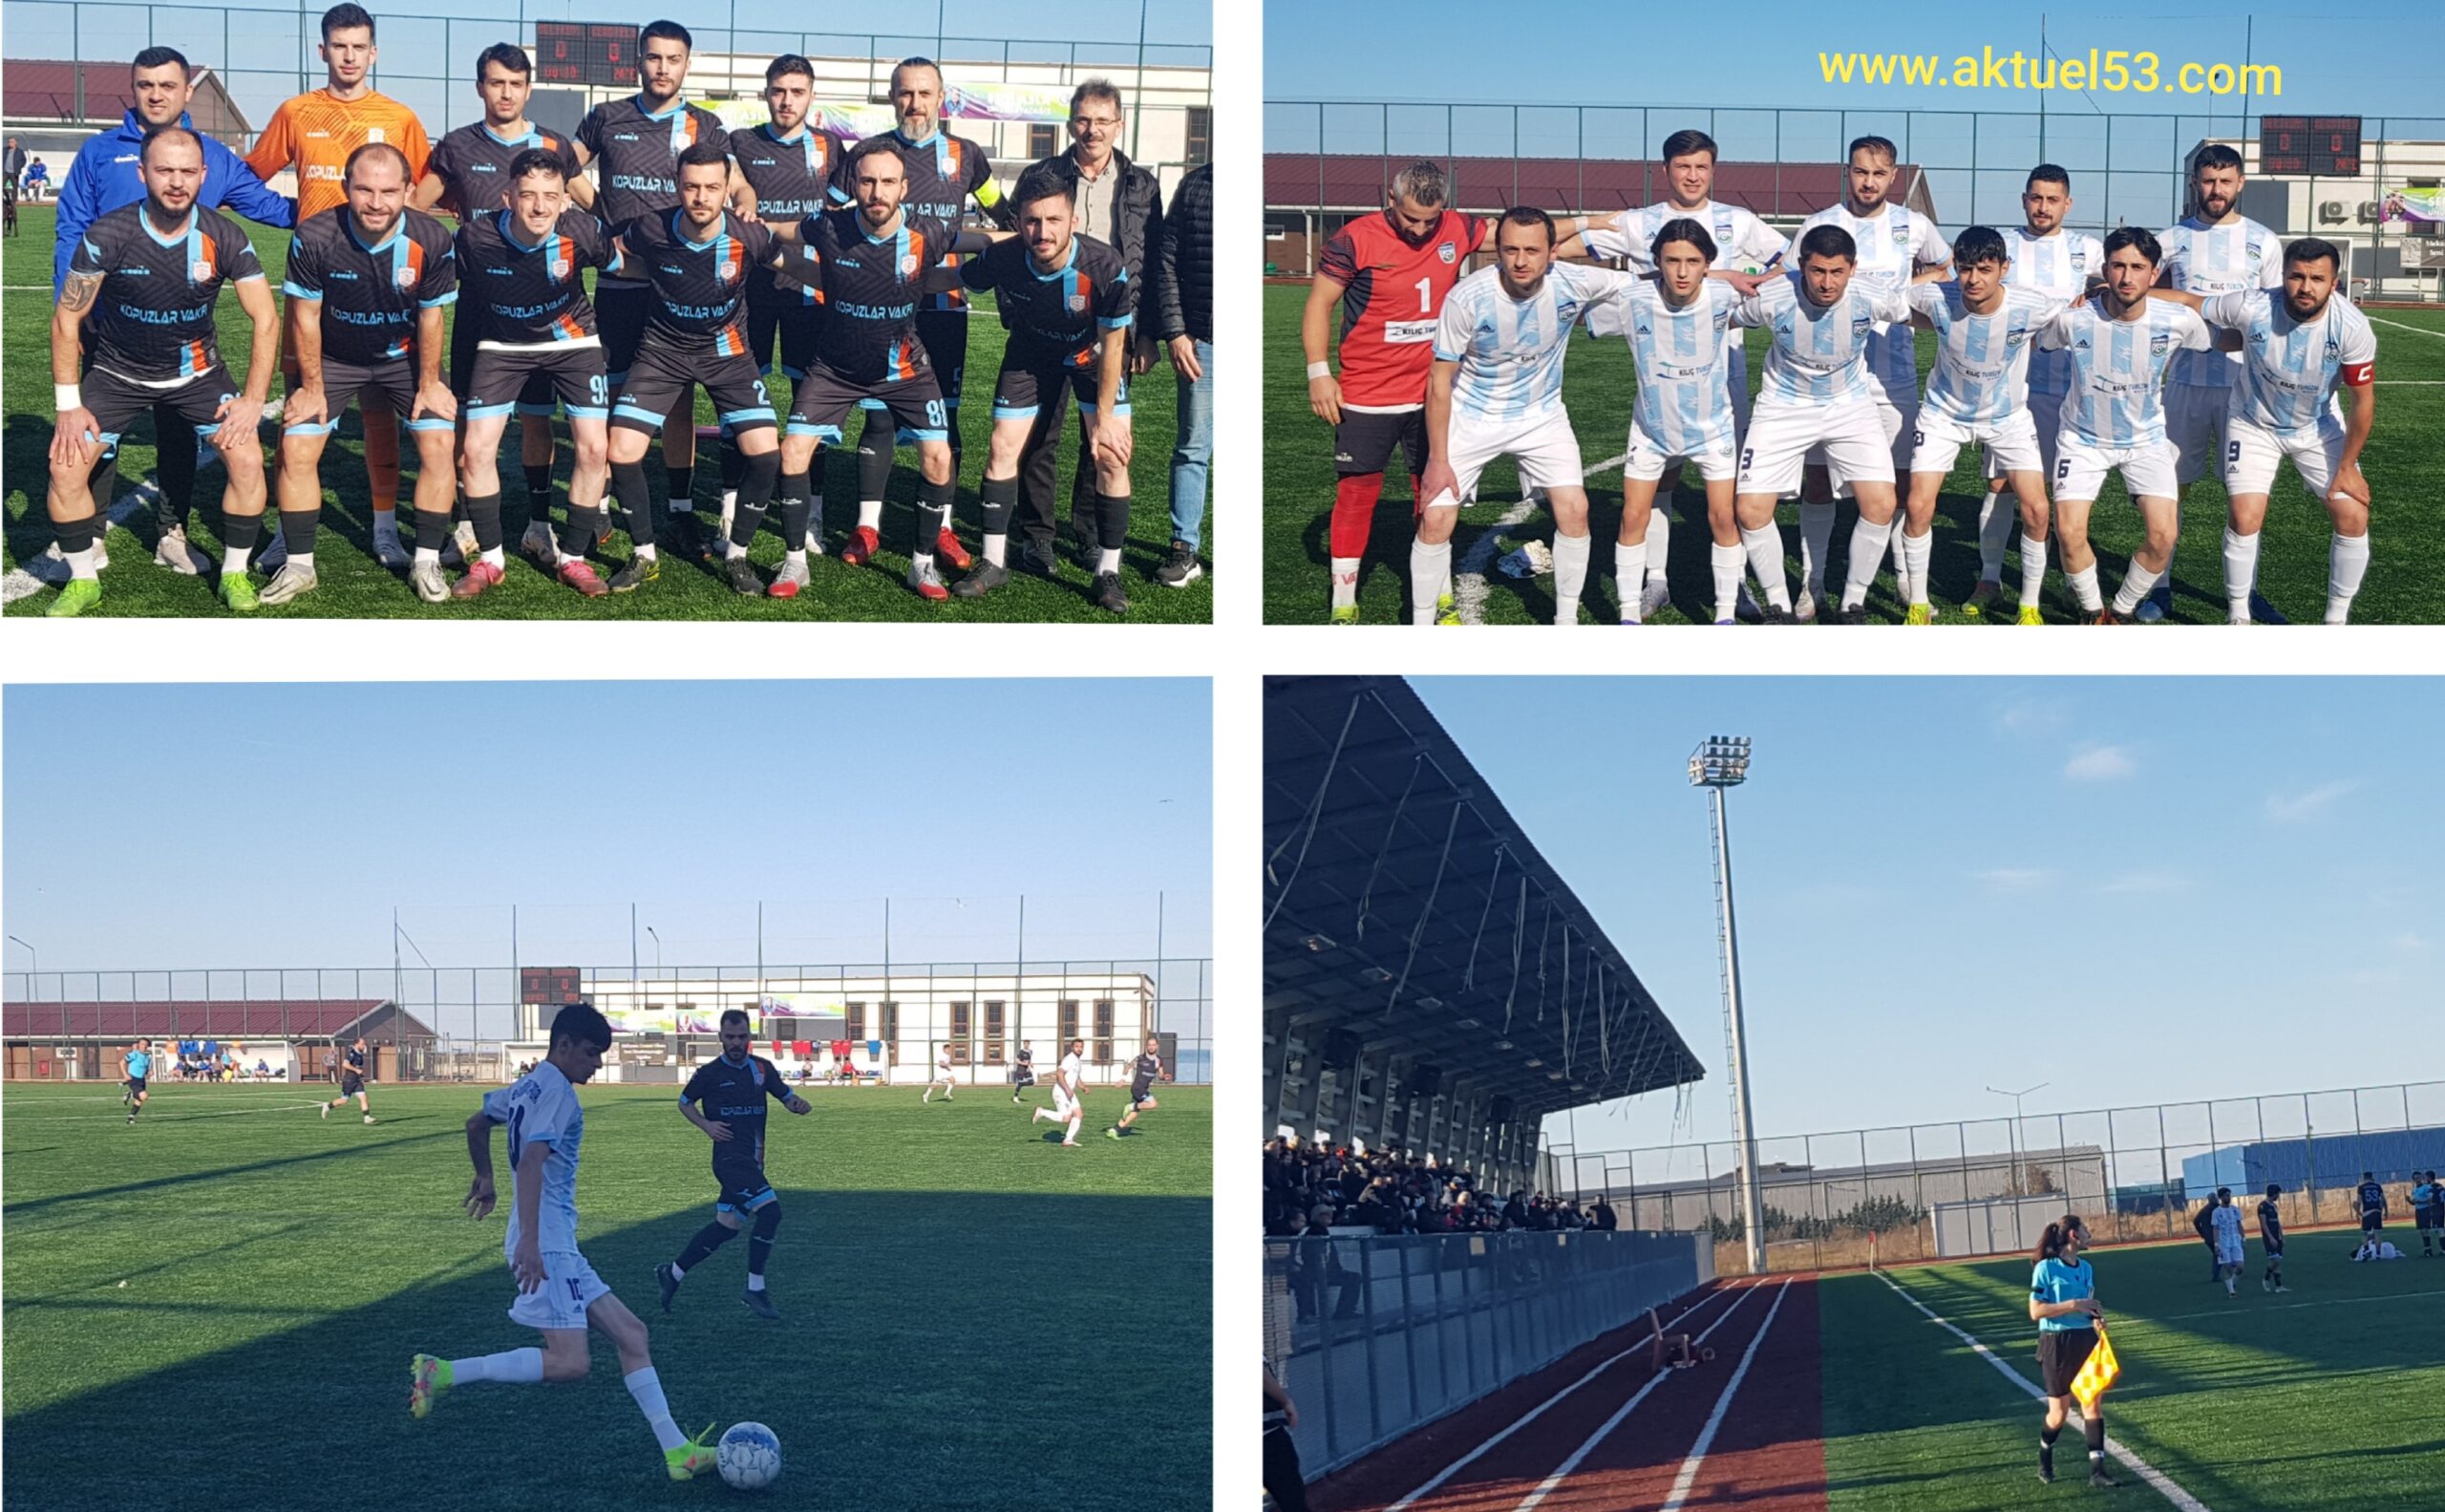 Rize Süper Amatörde, haftanın derbi maçında Veliköy 0 Kendirli Belediyespor 0